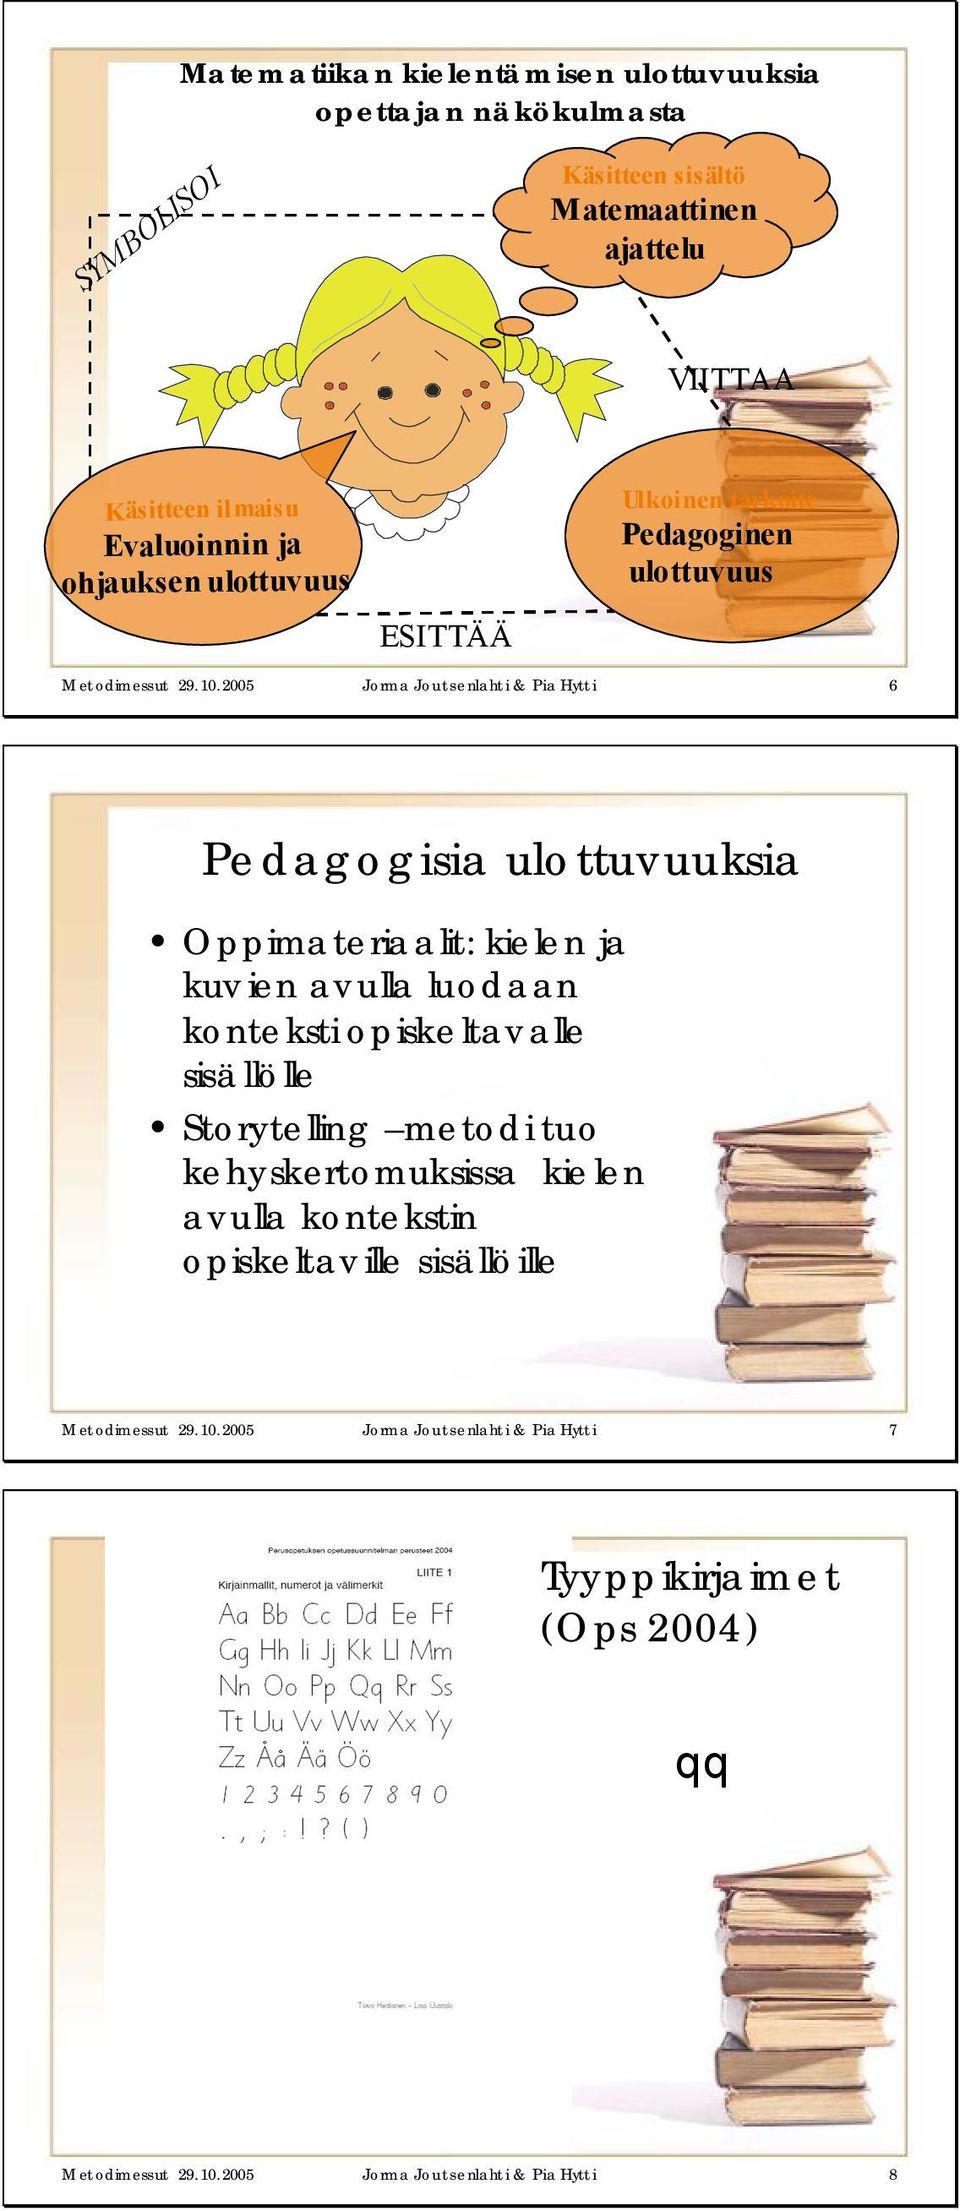 2005 Jorma Joutsenlahti & Pia Hytti 6 Pedagogisia ulottuvuuksia Oppimateriaalit: kielen ja kuv ien avulla luodaan konteksti opiskeltavalle sisällölle